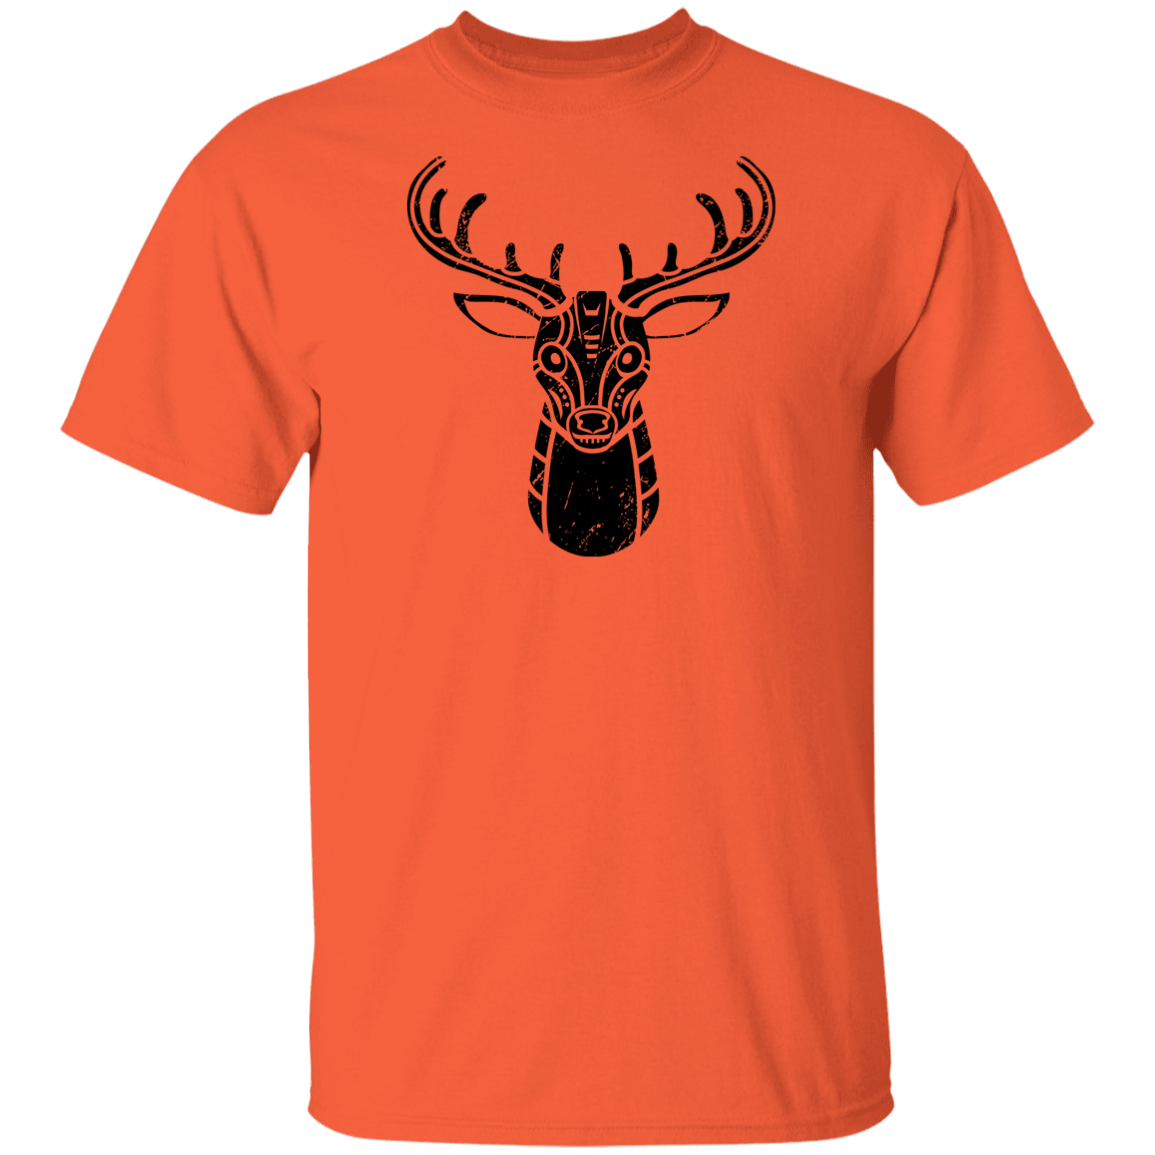 Black Distressed Emblem T-Shirt for Kids (Deer/Stag)